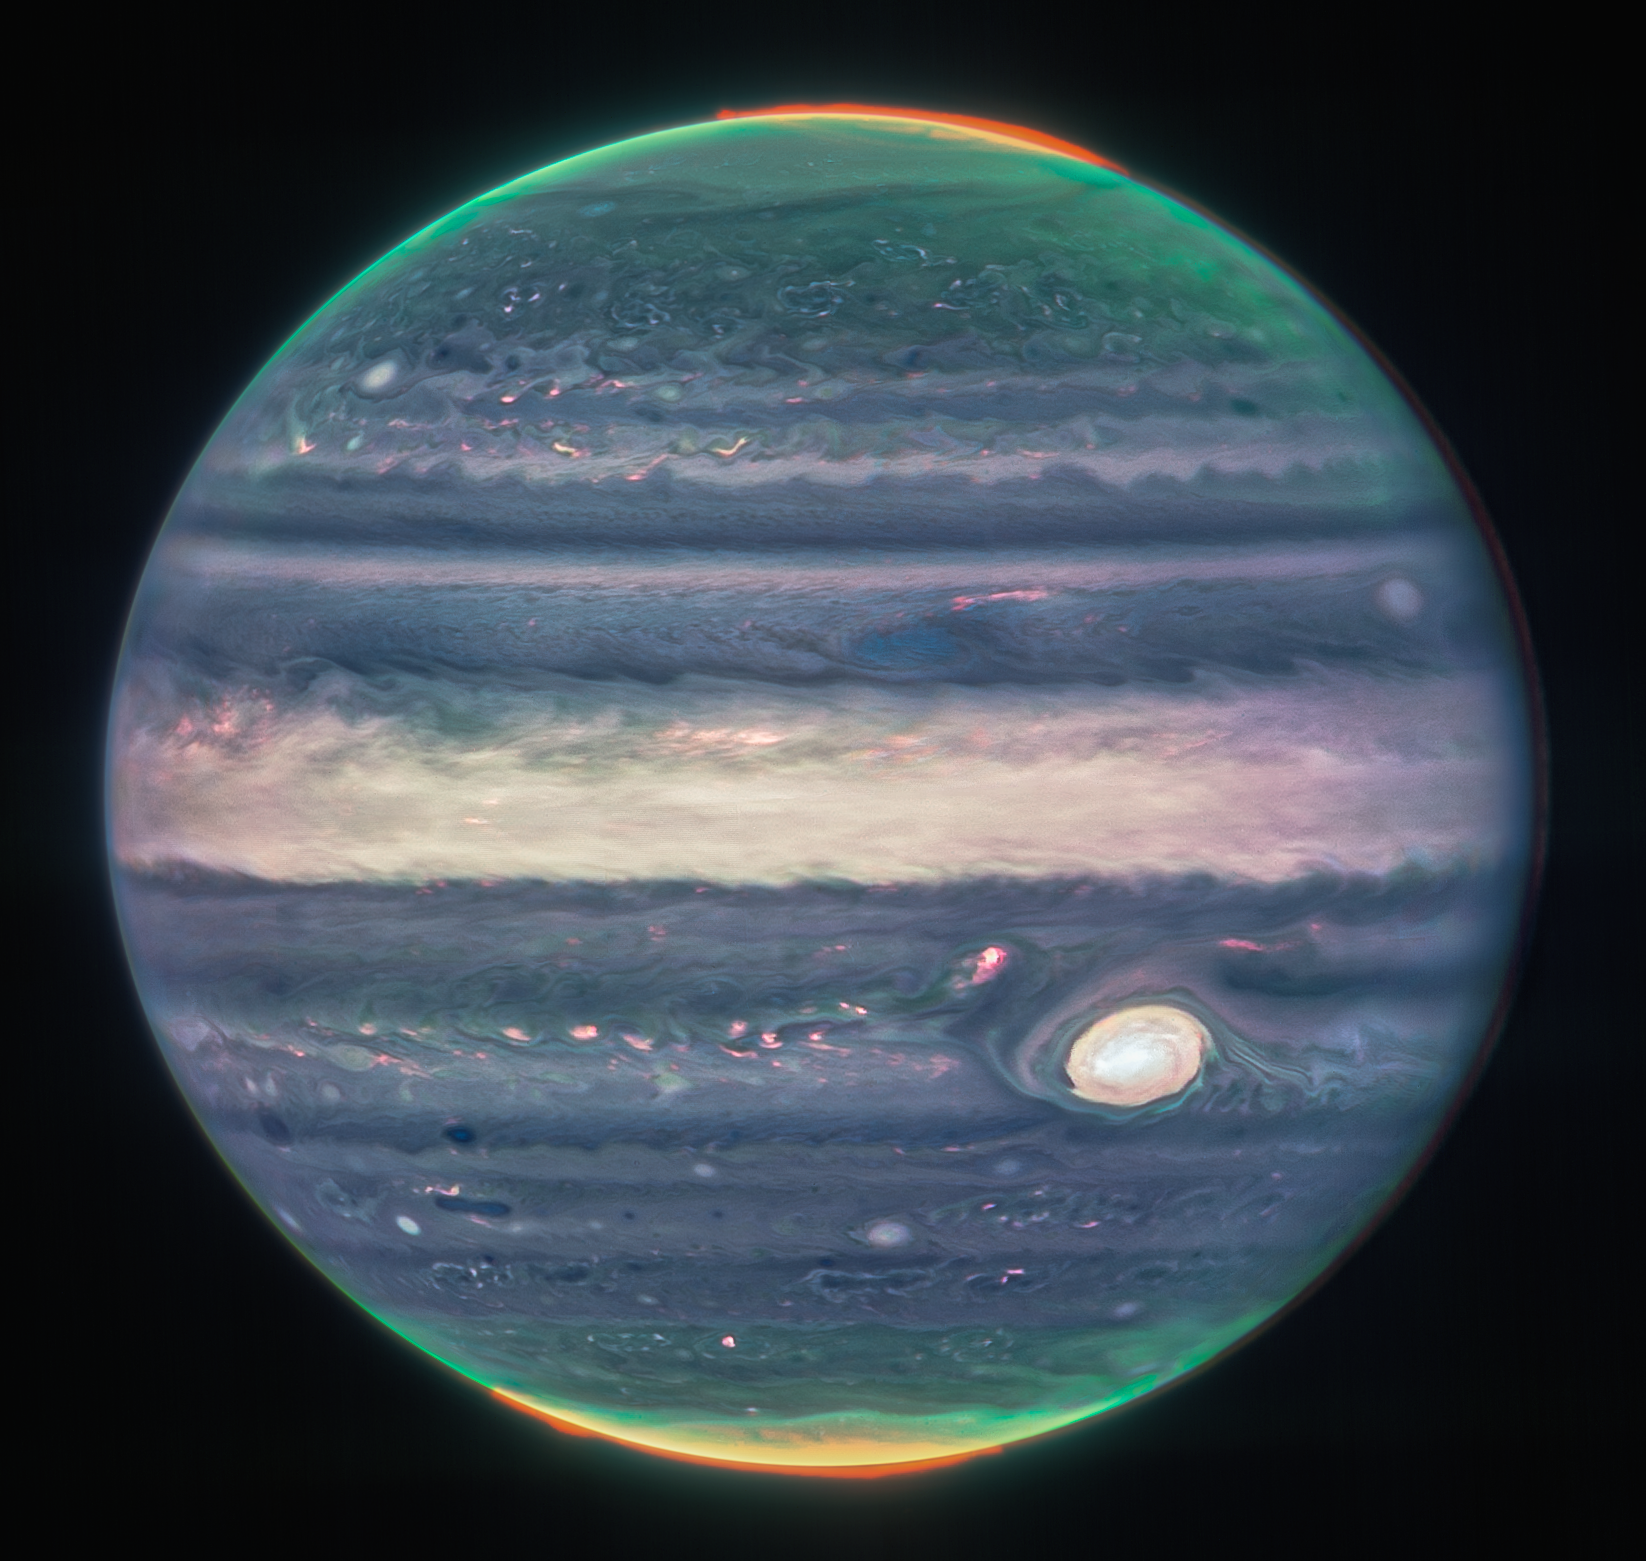 Webb'in NIRCam'ı tarafından çekilen Jüpiter'in birleşik görüntüsü;  kutupların etrafındaki turuncu parıltı auroradır.